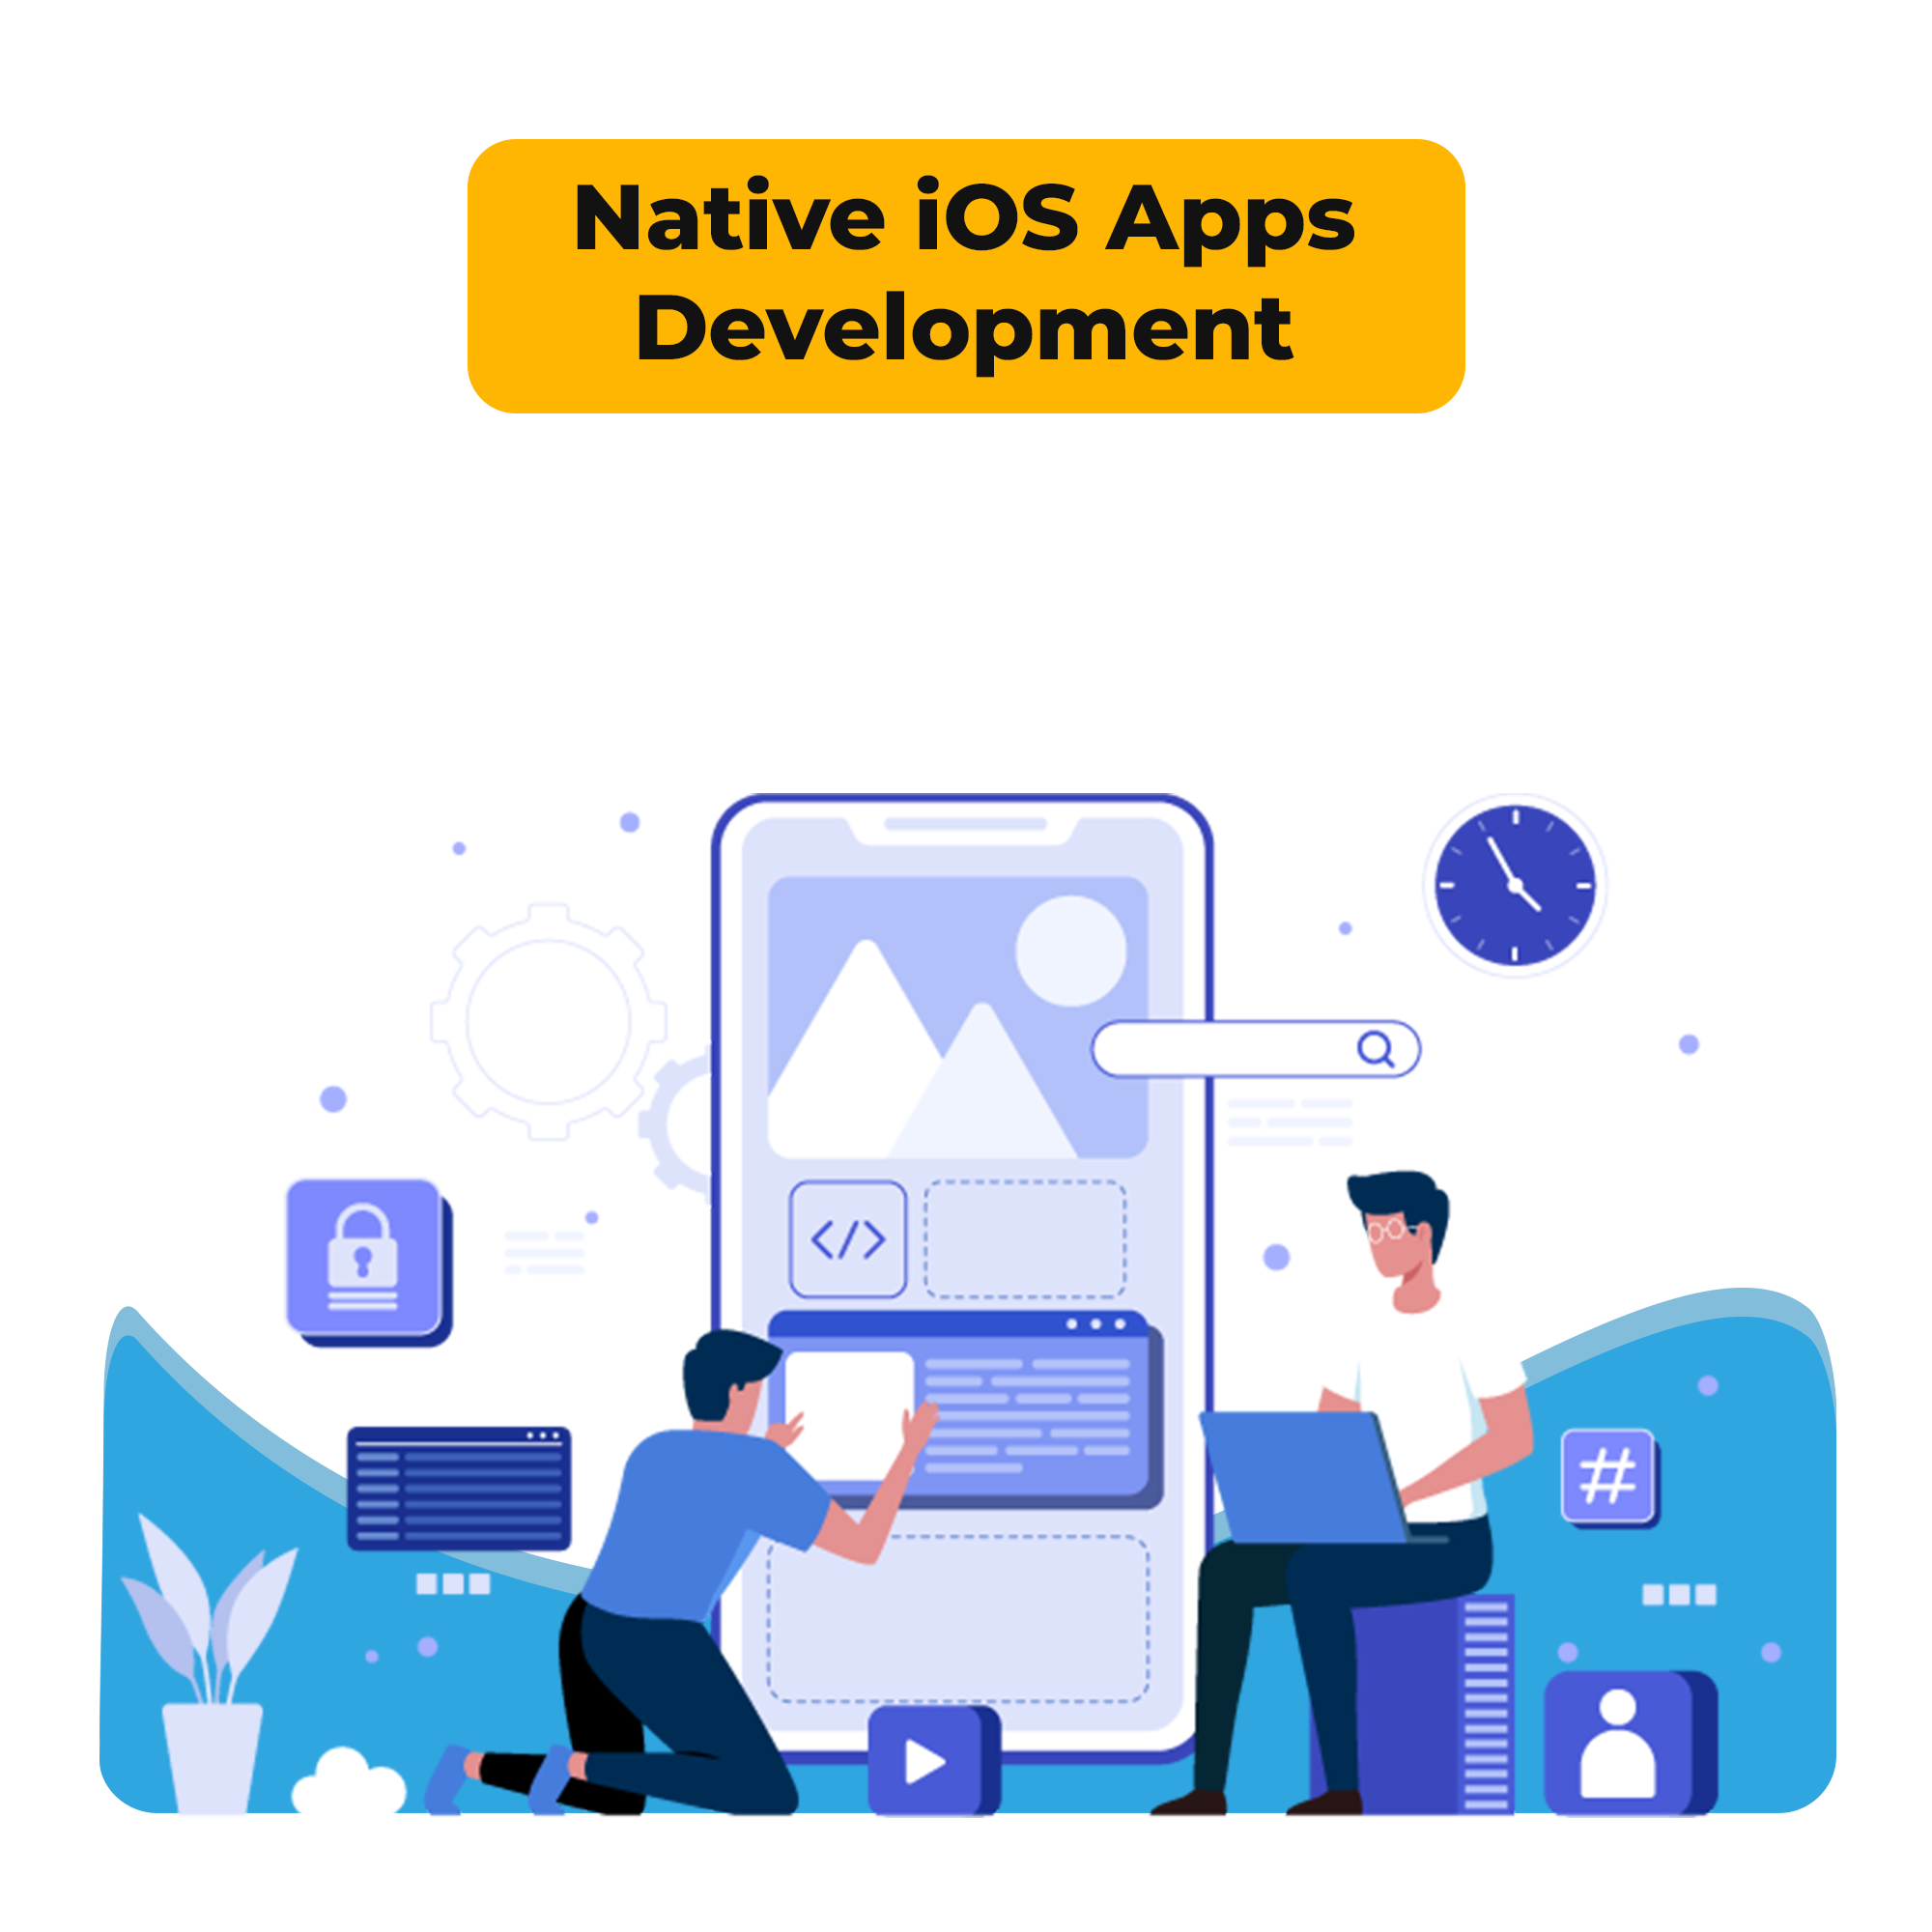 Native iOS apps